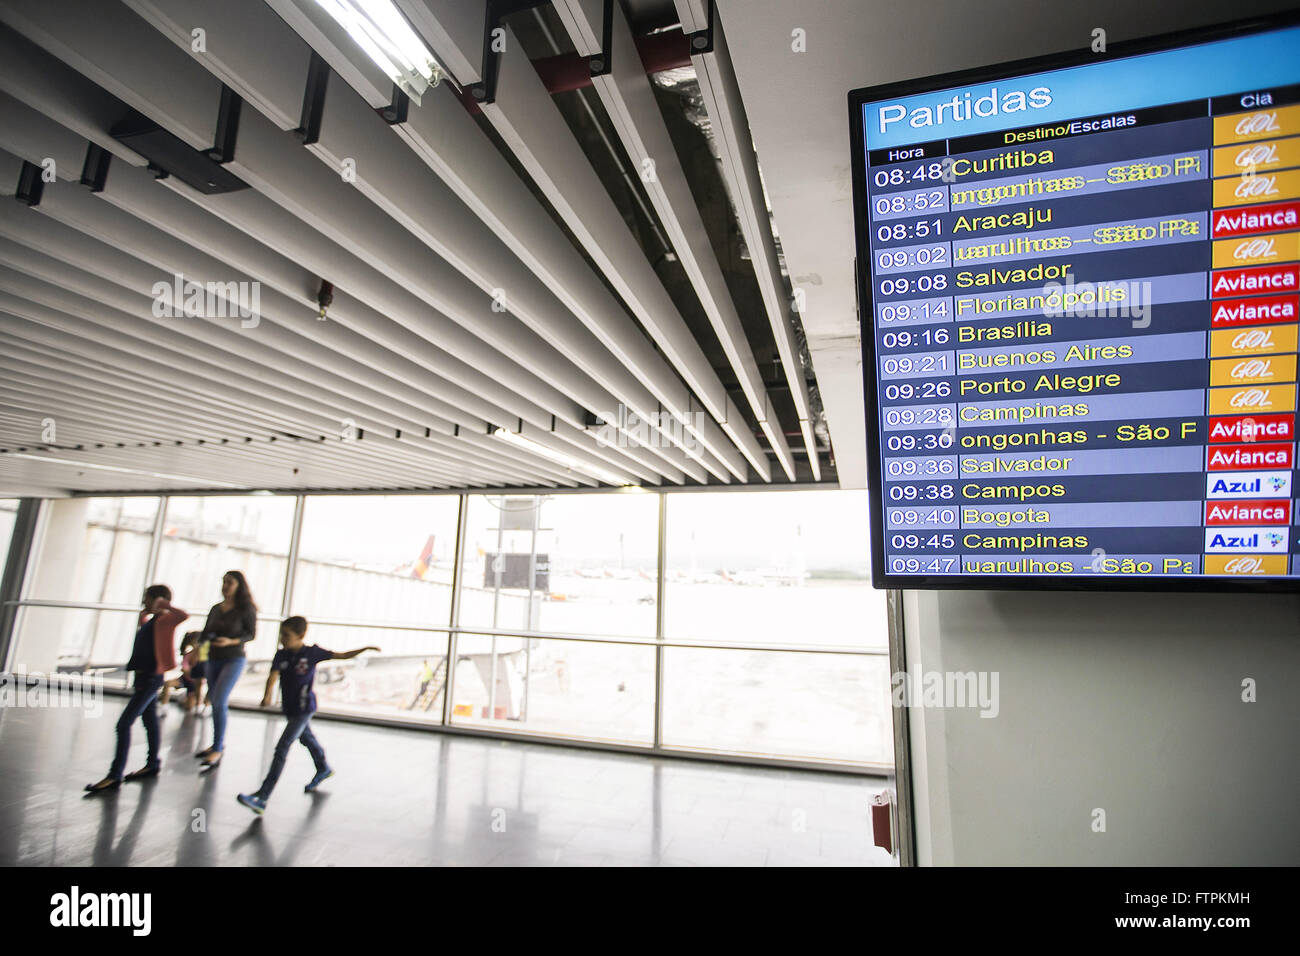 International Airport of Rio de Janeiro / Galeao - Antonio Carlos Jobim Stock Photo